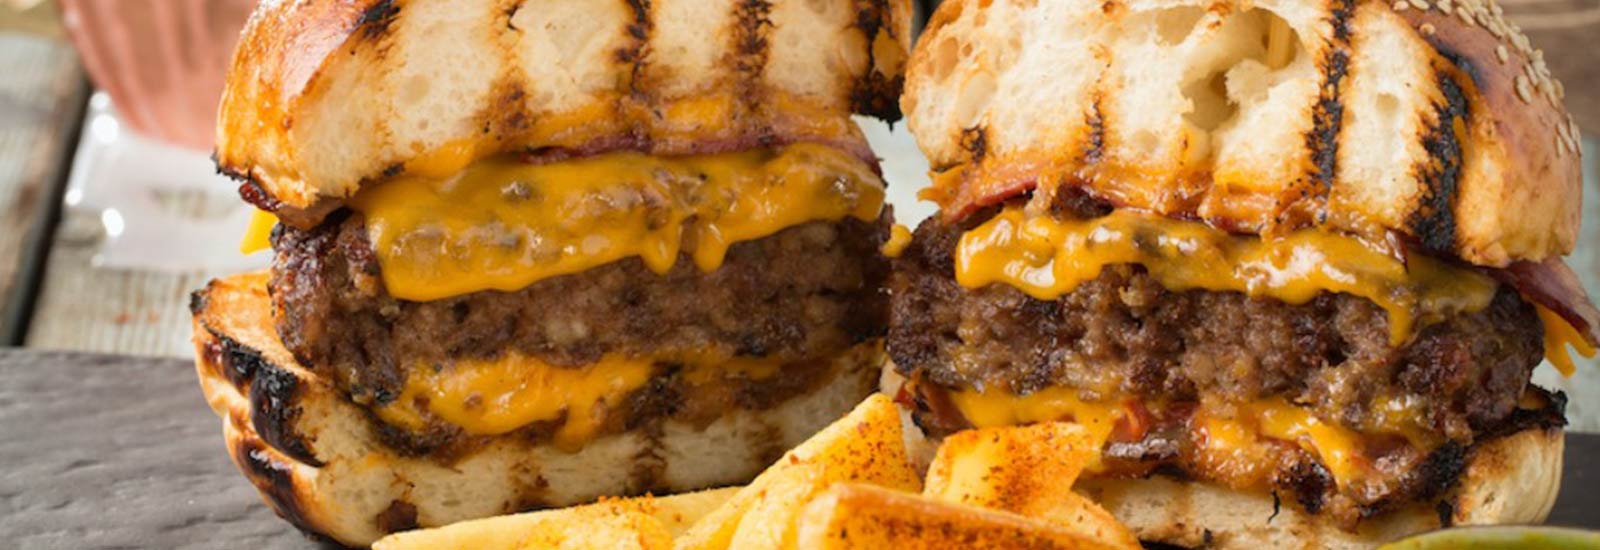 ¿Debe llamarse hamburguesa si no está elaborada con carne?